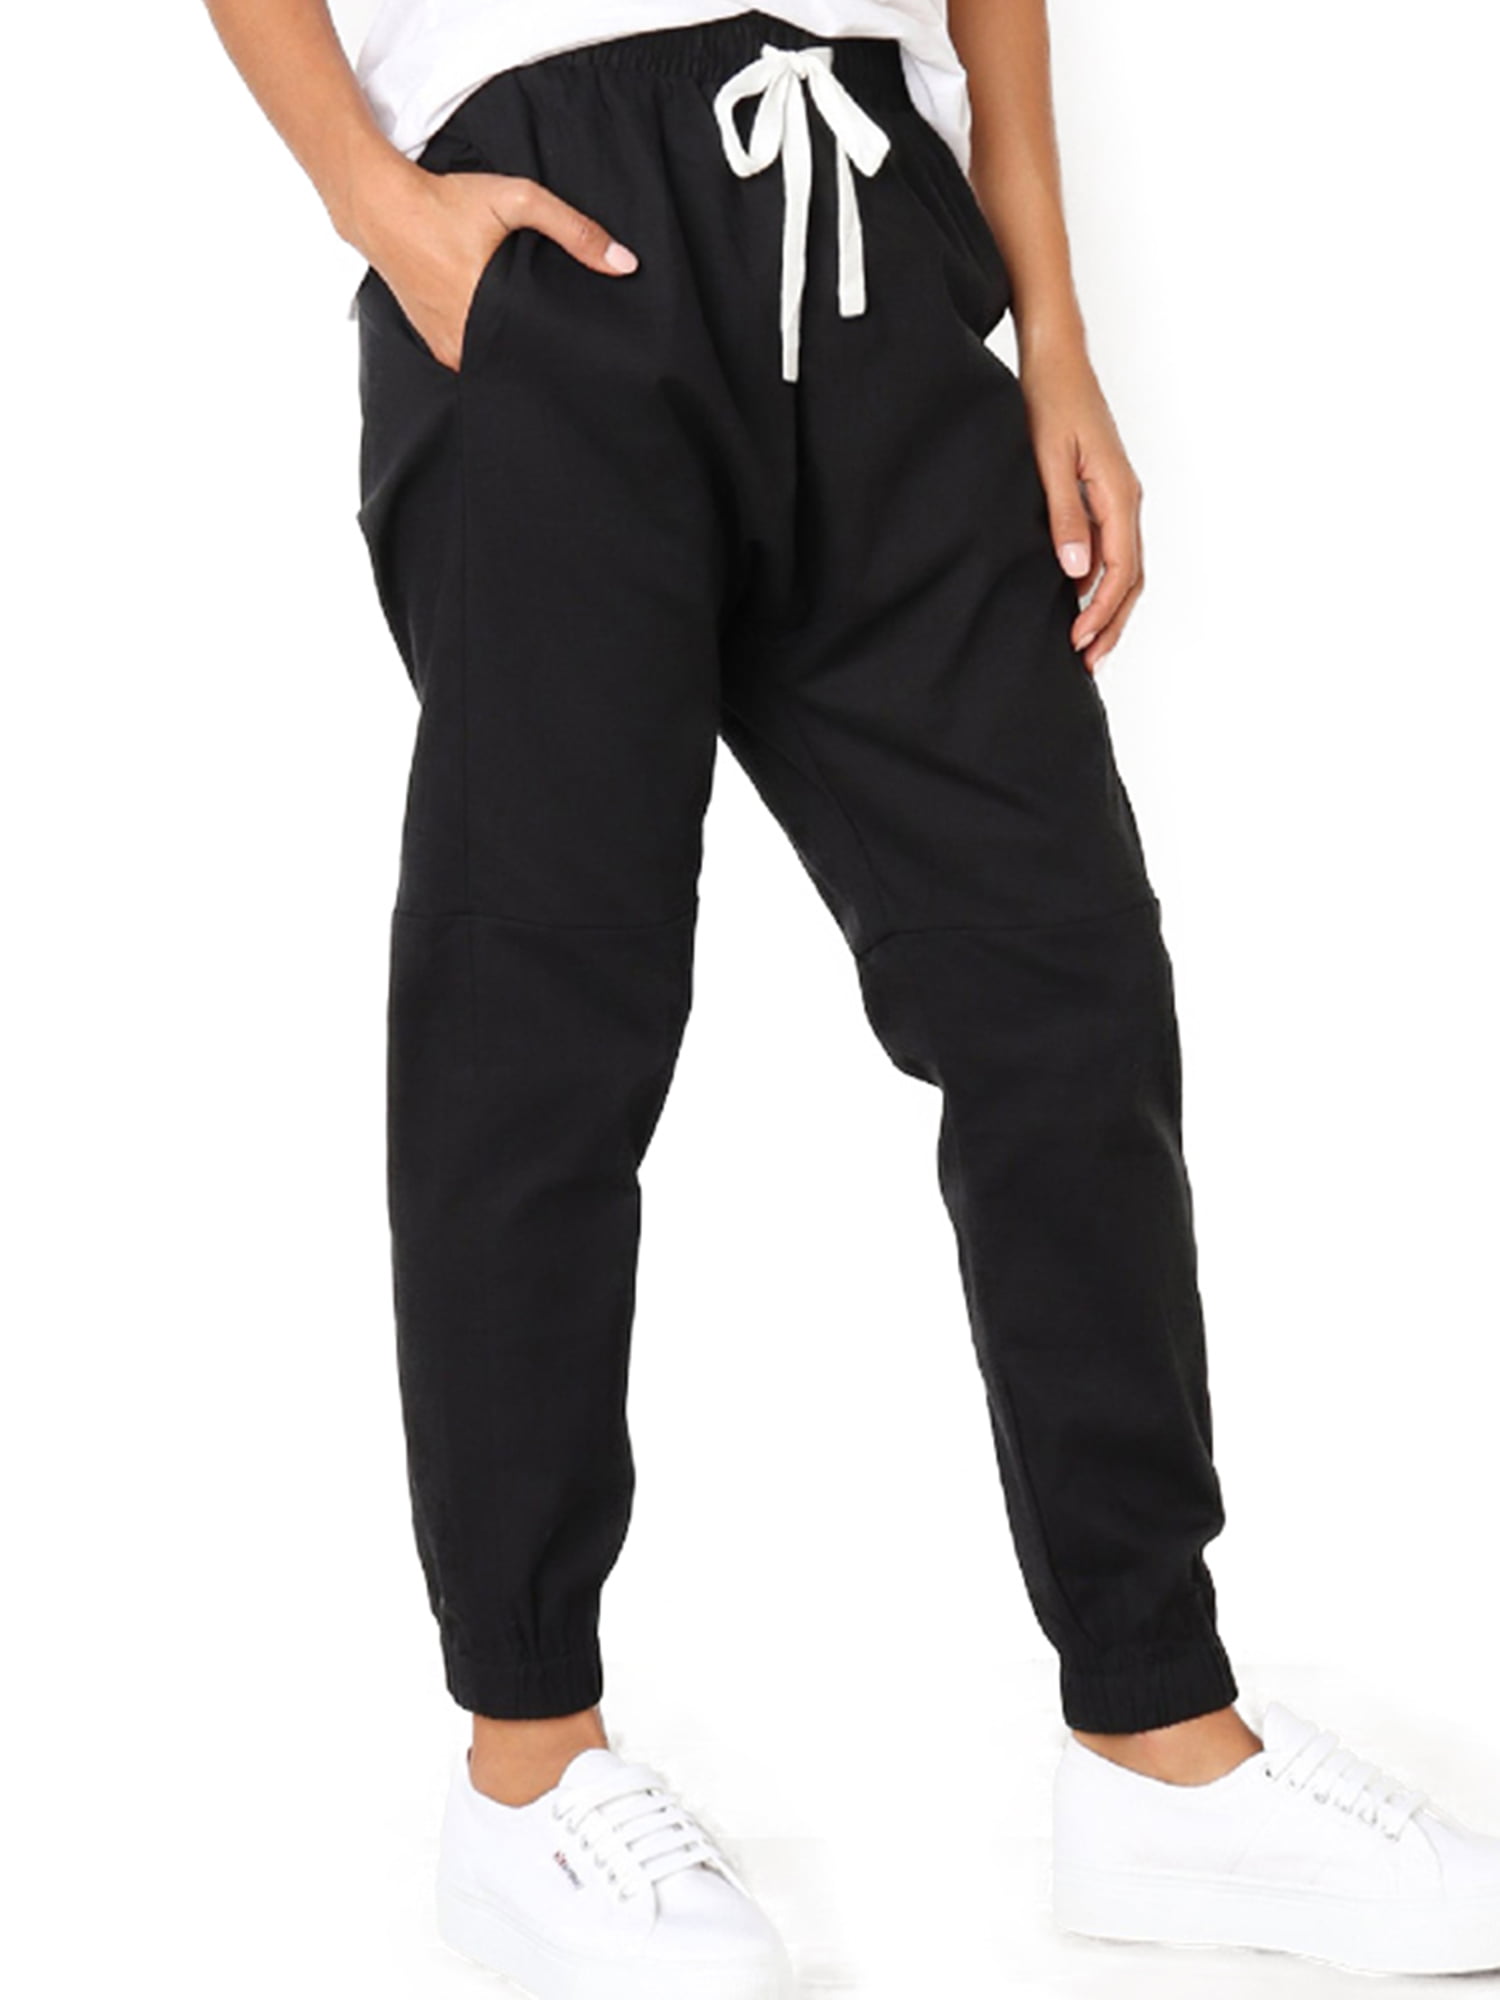 NK Fleece Slim Fit Pocket Style Jogging Trouser For Men-Black-BE17419 -  BrandsEgo.Com